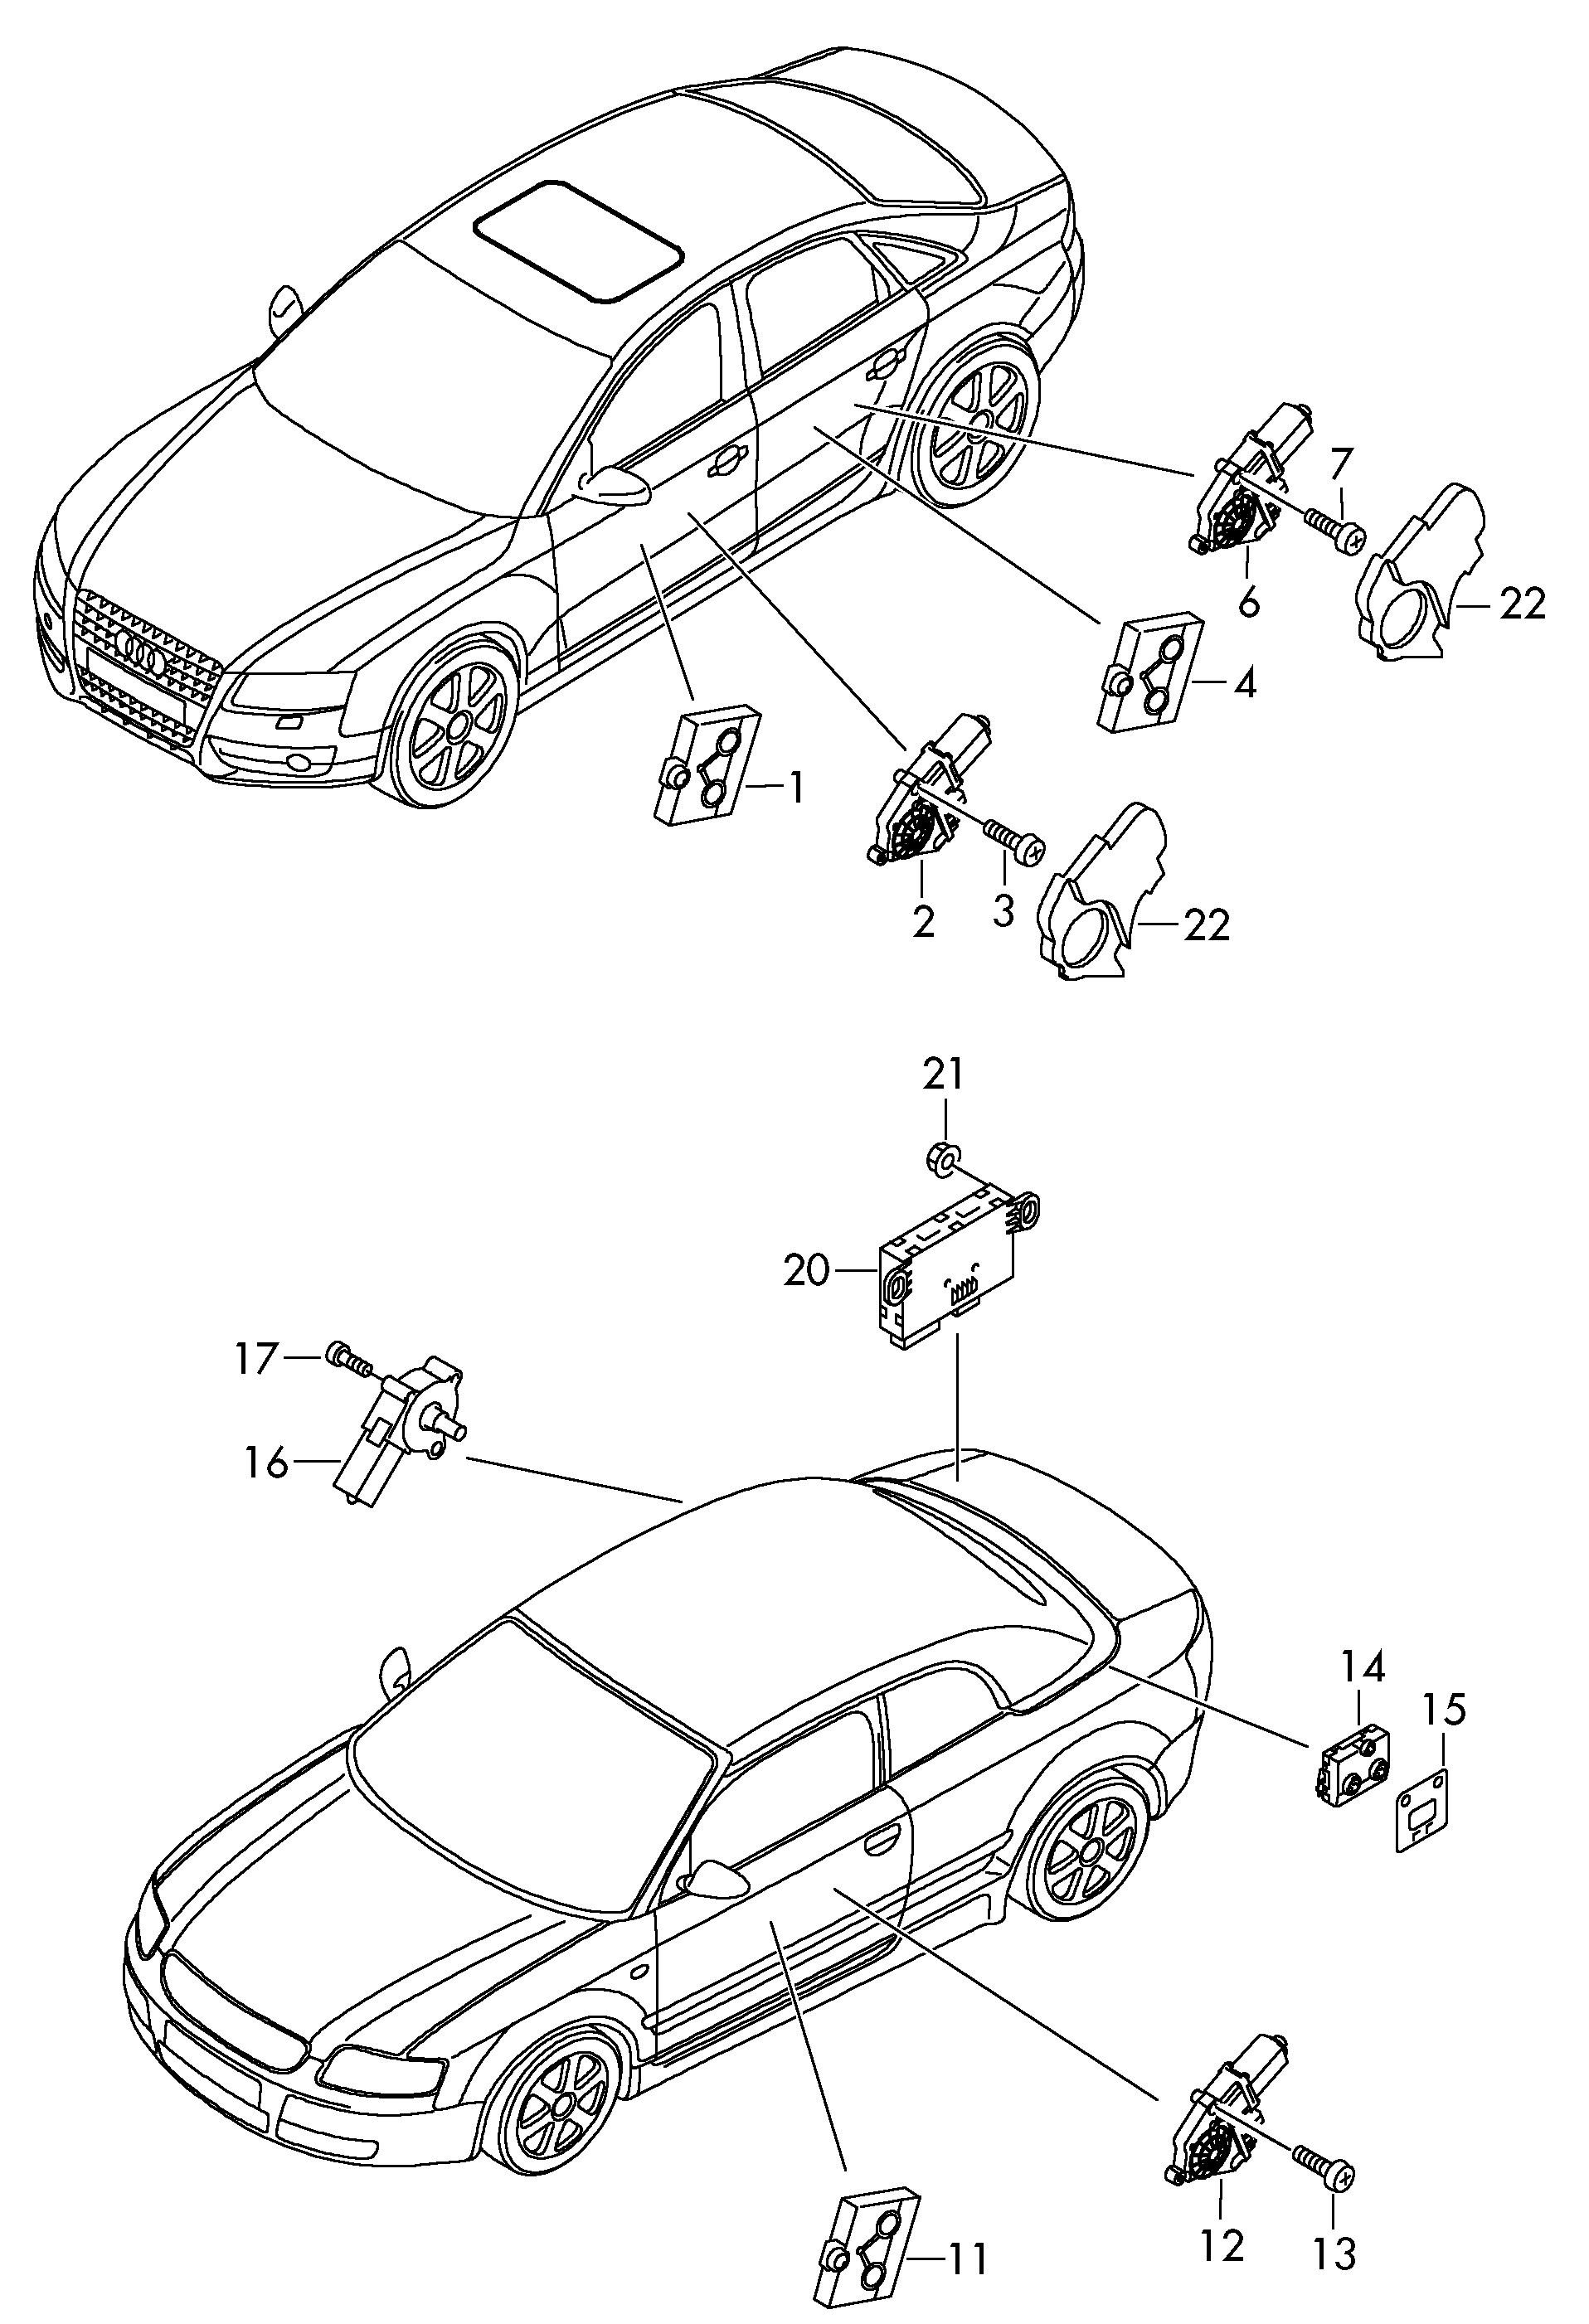 Steuergeraet fuer
Verdeckbetaetigung - Audi A4/S4 Cabrio./qu.(AA4C)  